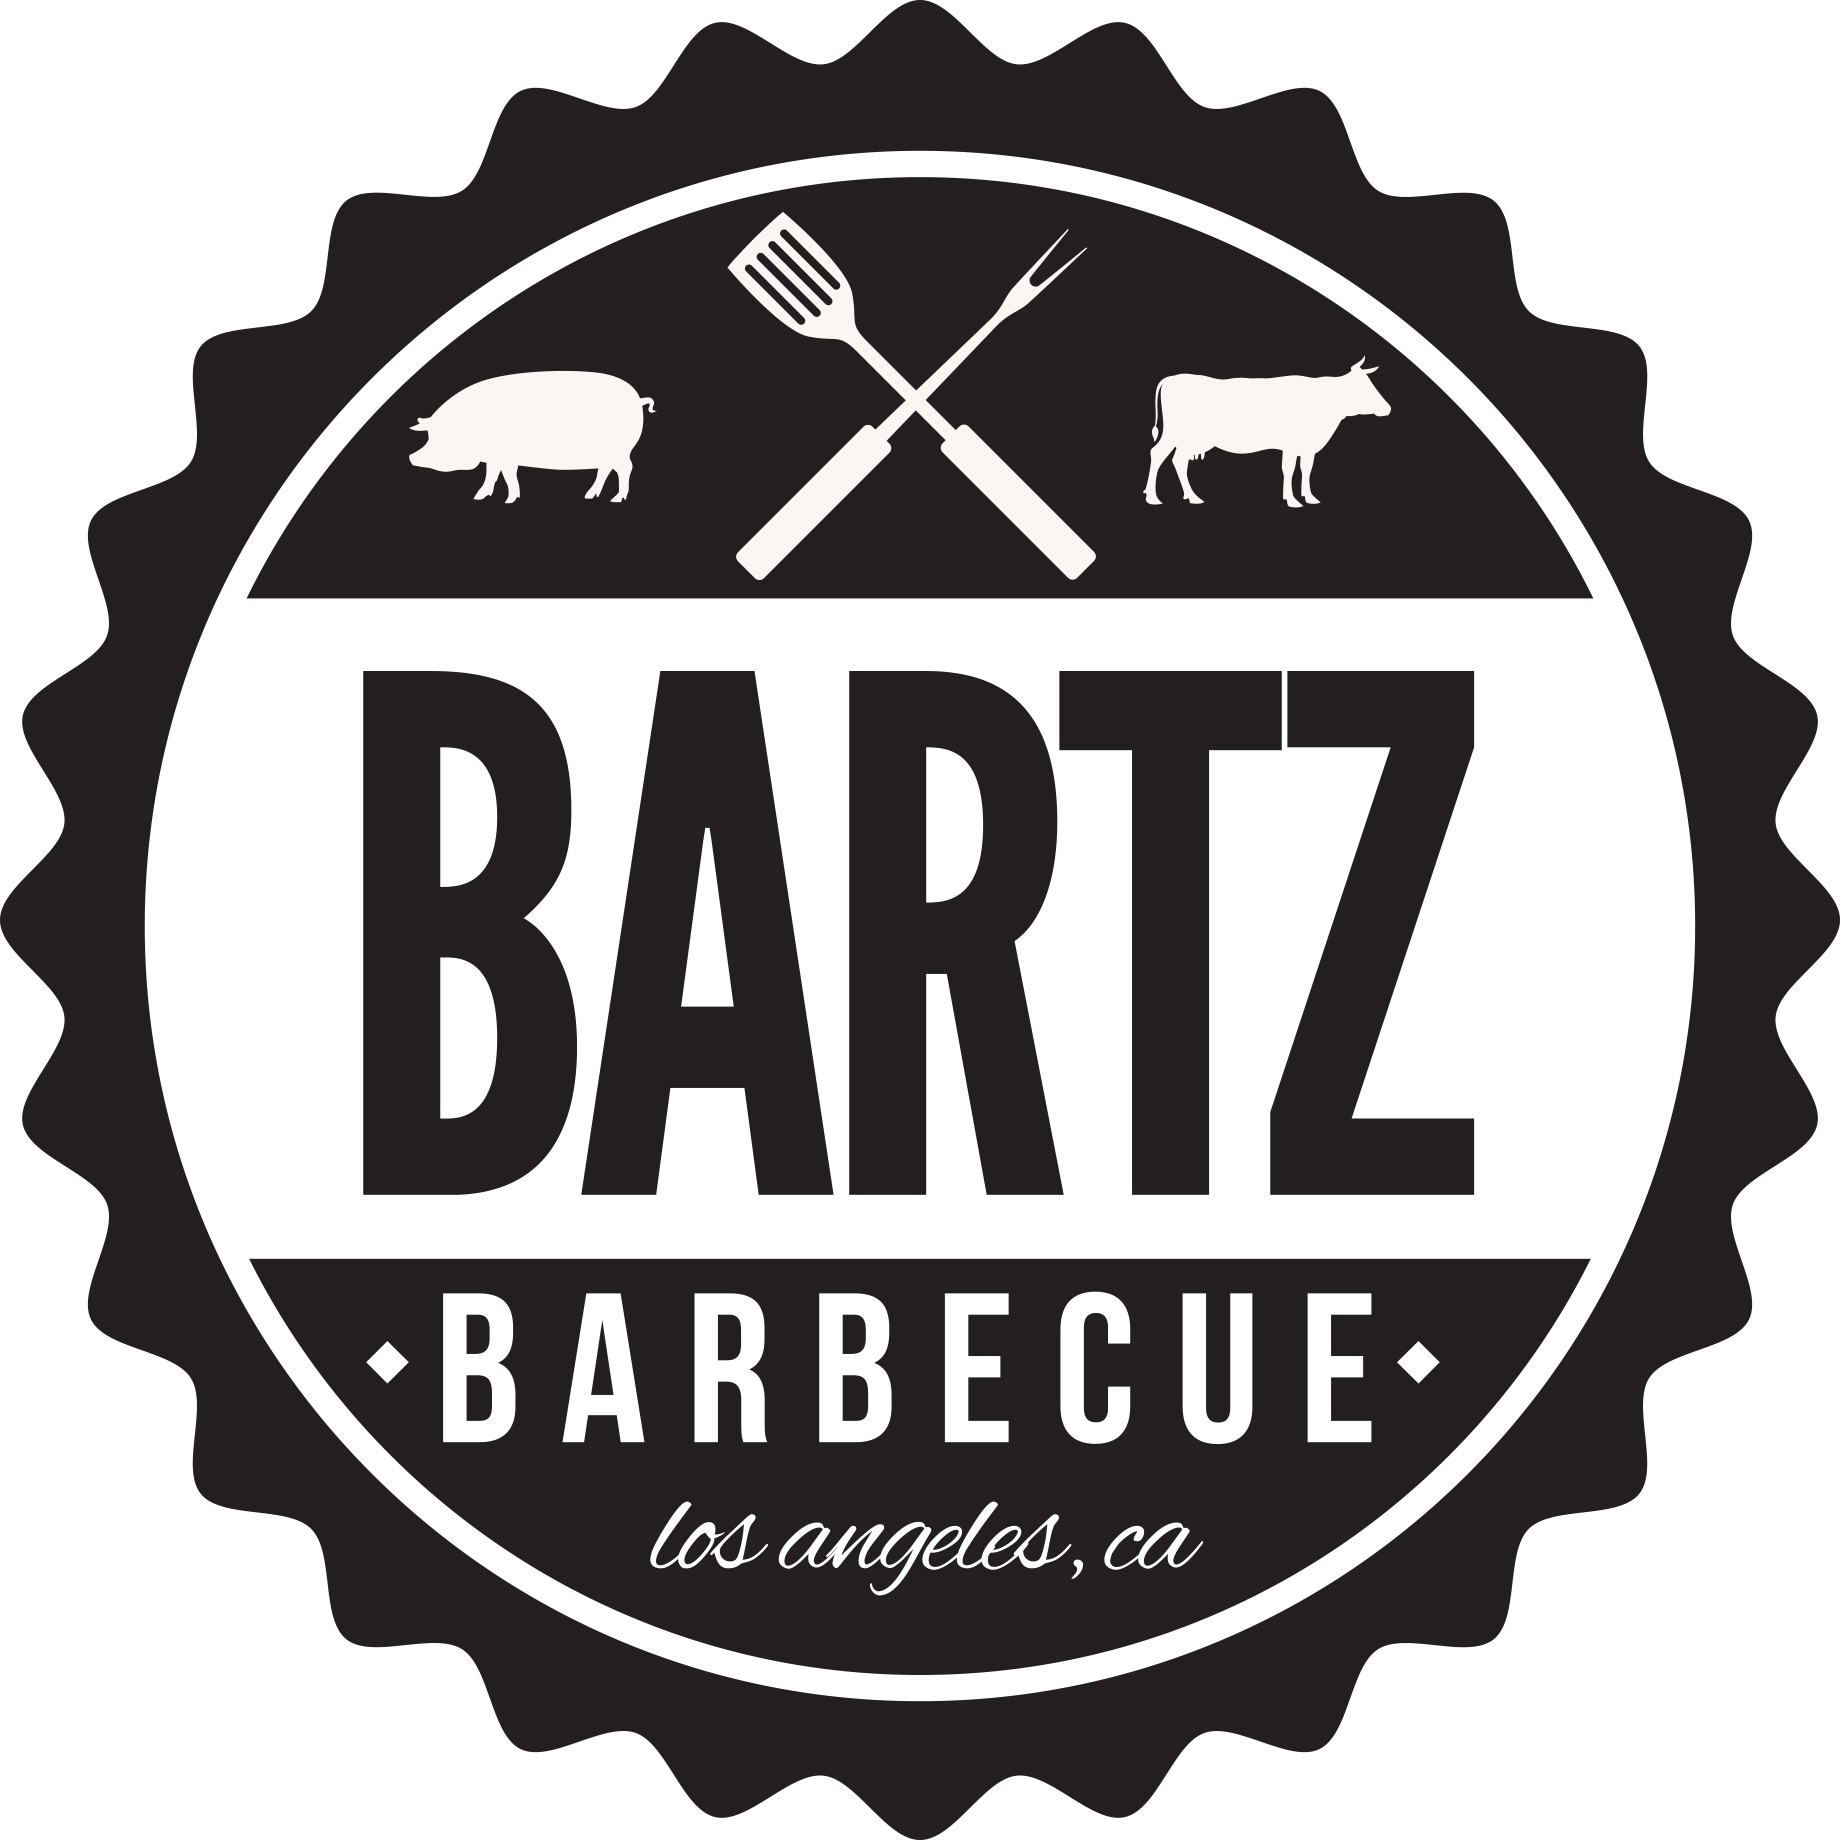 Bartz Barbecue